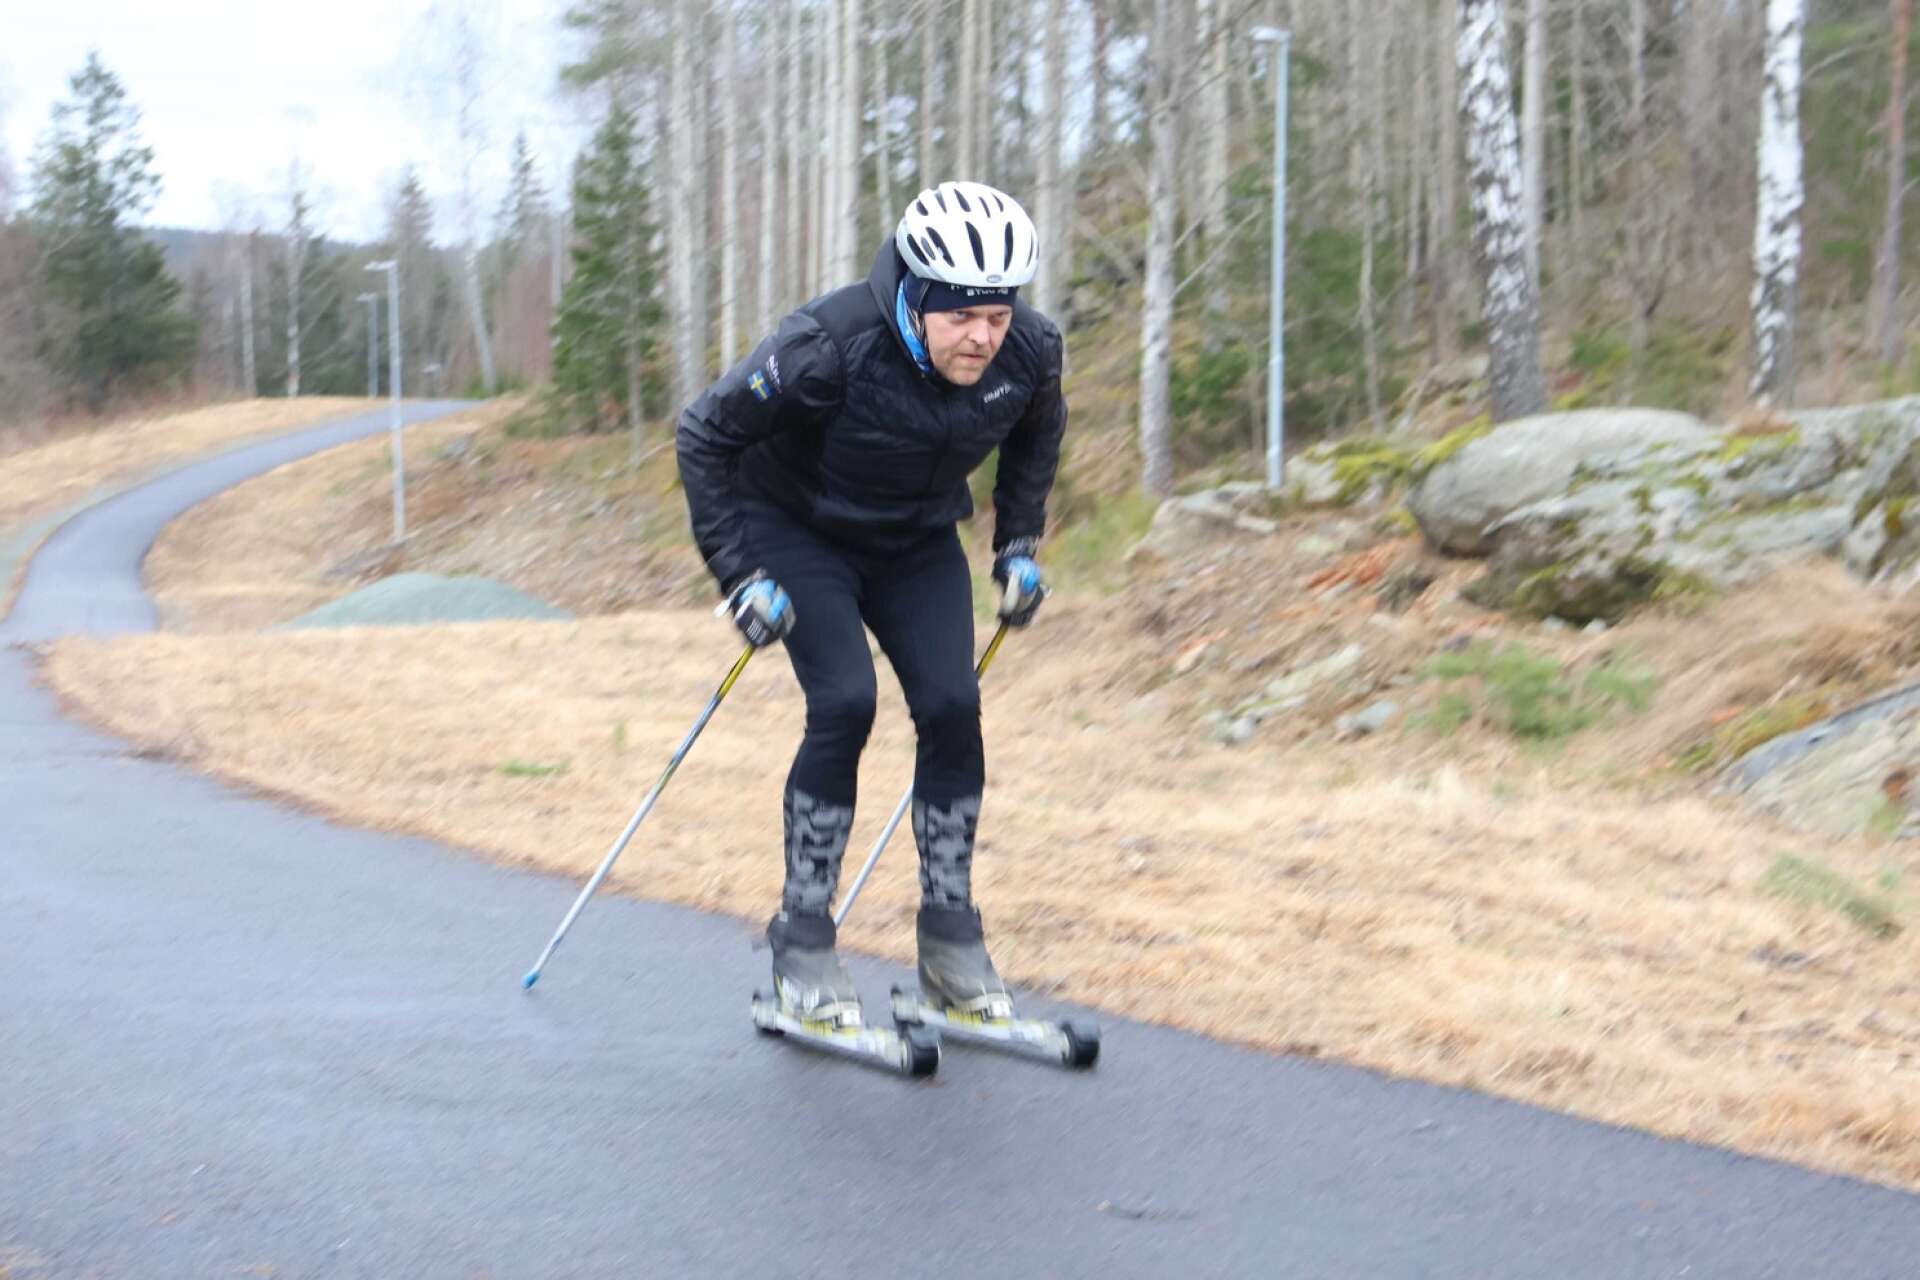 De flesta skidpassen blir på rullskidor för Fredrik Lund som här på det asfalterade motionsspåret vid Långevi.